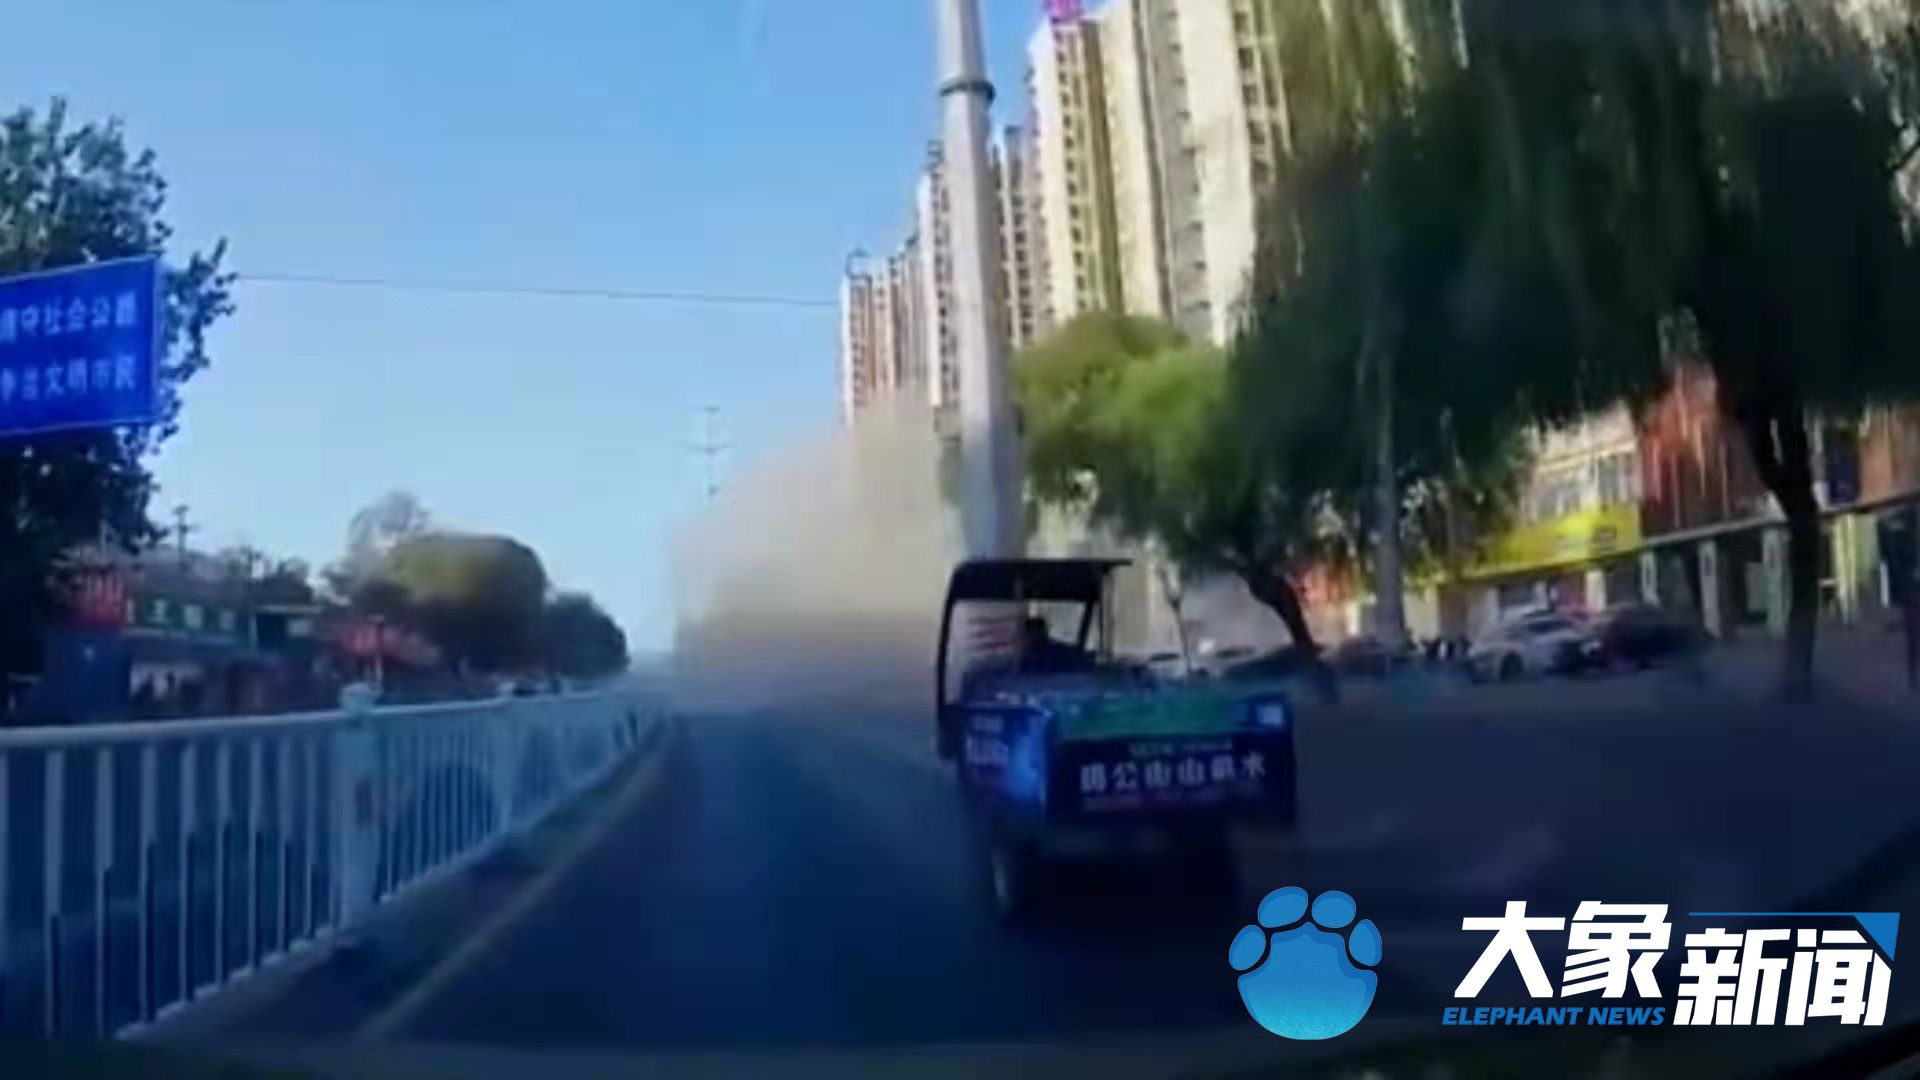 漯河一炒鸡店发生爆炸造成4人受伤 爆炸系煤气罐所致